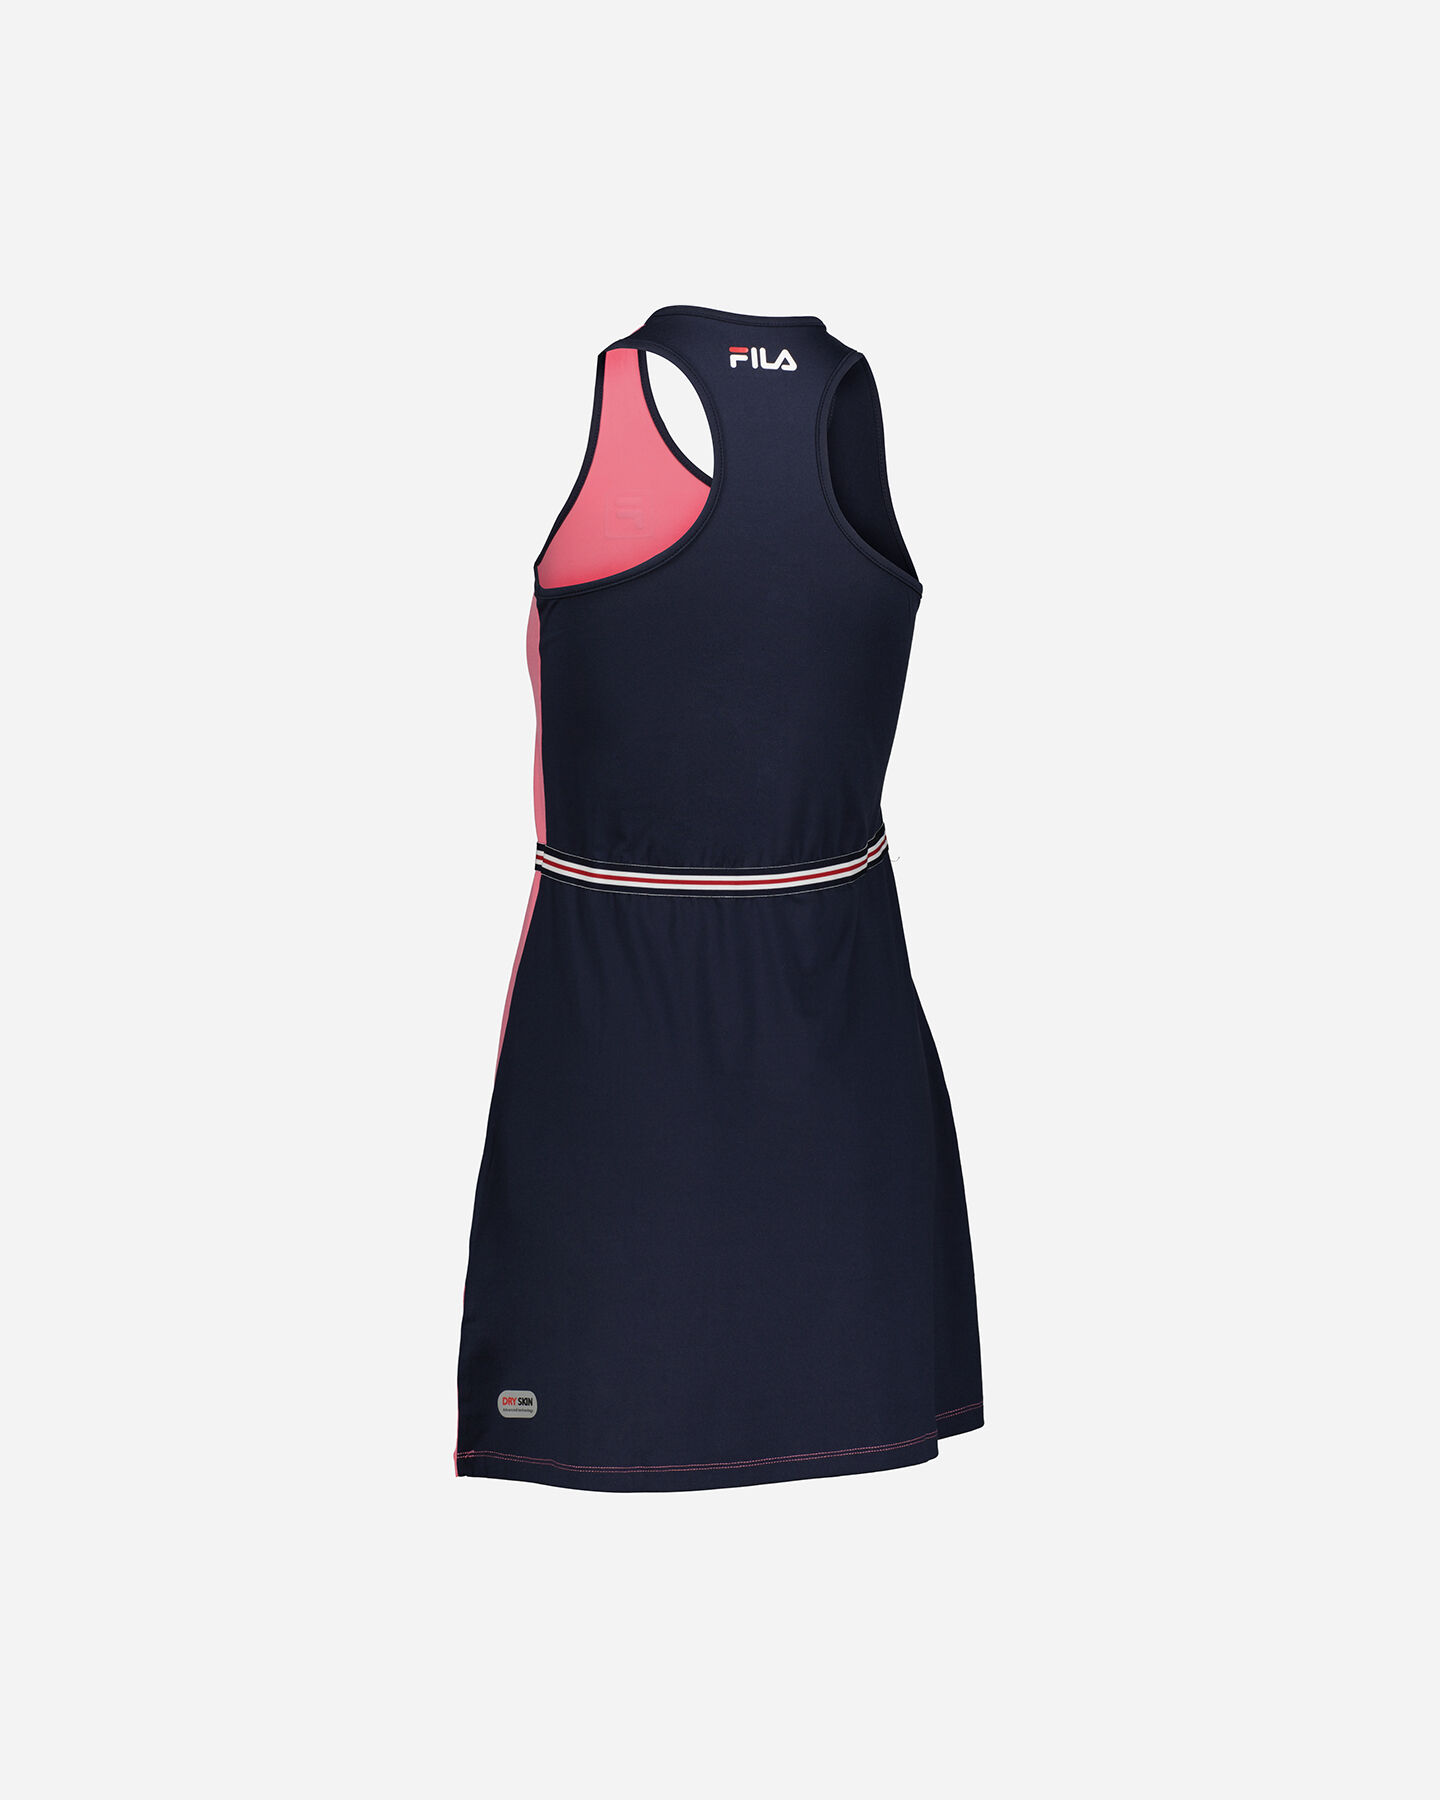  Abbigliamento tennis FILA CLASSIC TENNIS W S4100454 scatto 1